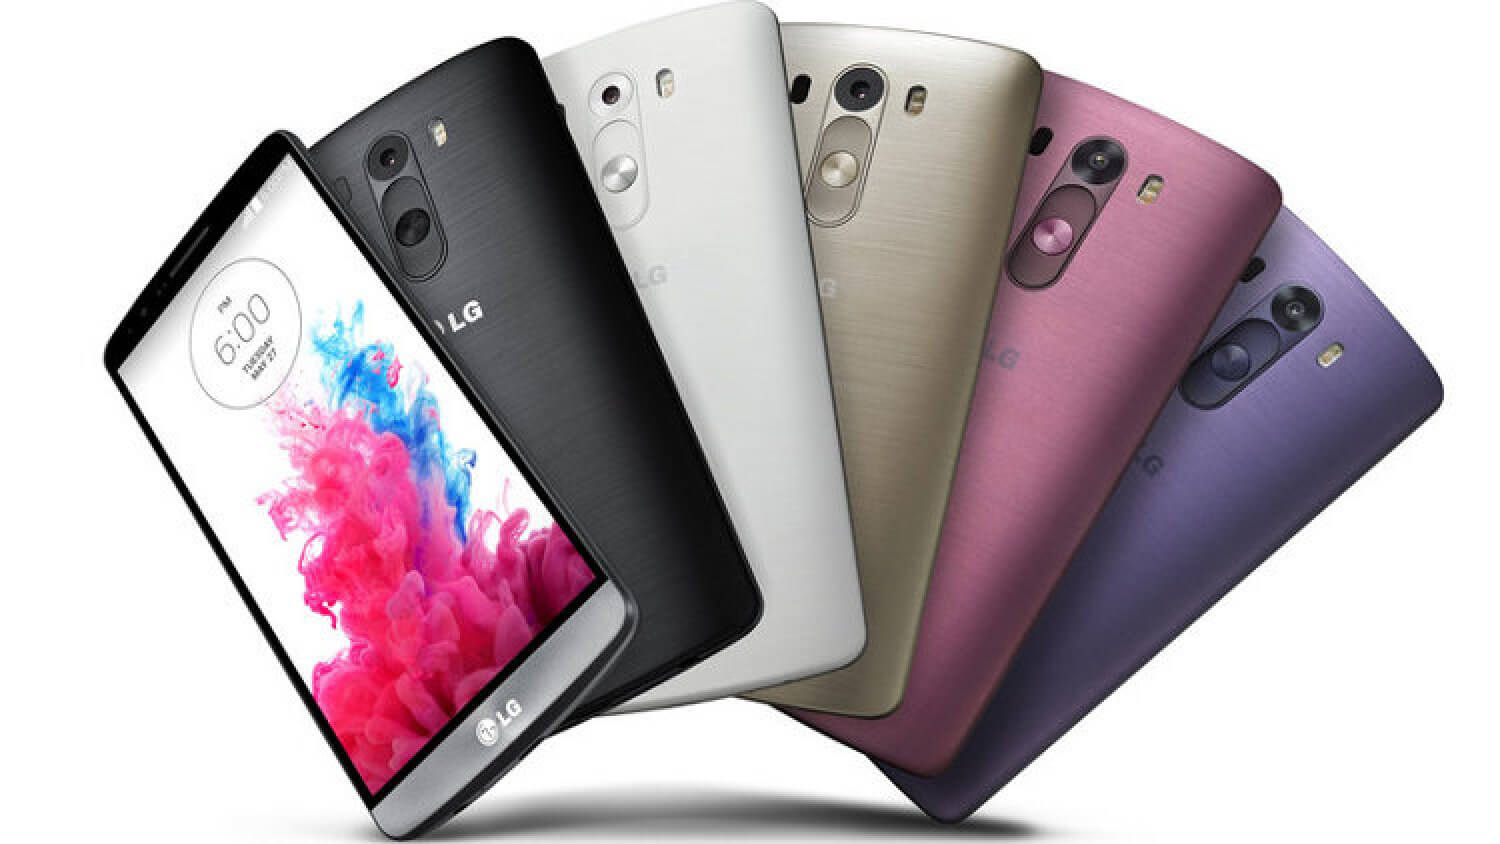 Google Nexus 6 или LG G3? Сравнение несравненных Android-флагманов. Google Nexus 6 — современнее, LG G3 — удобнее и дешевле. Фото.